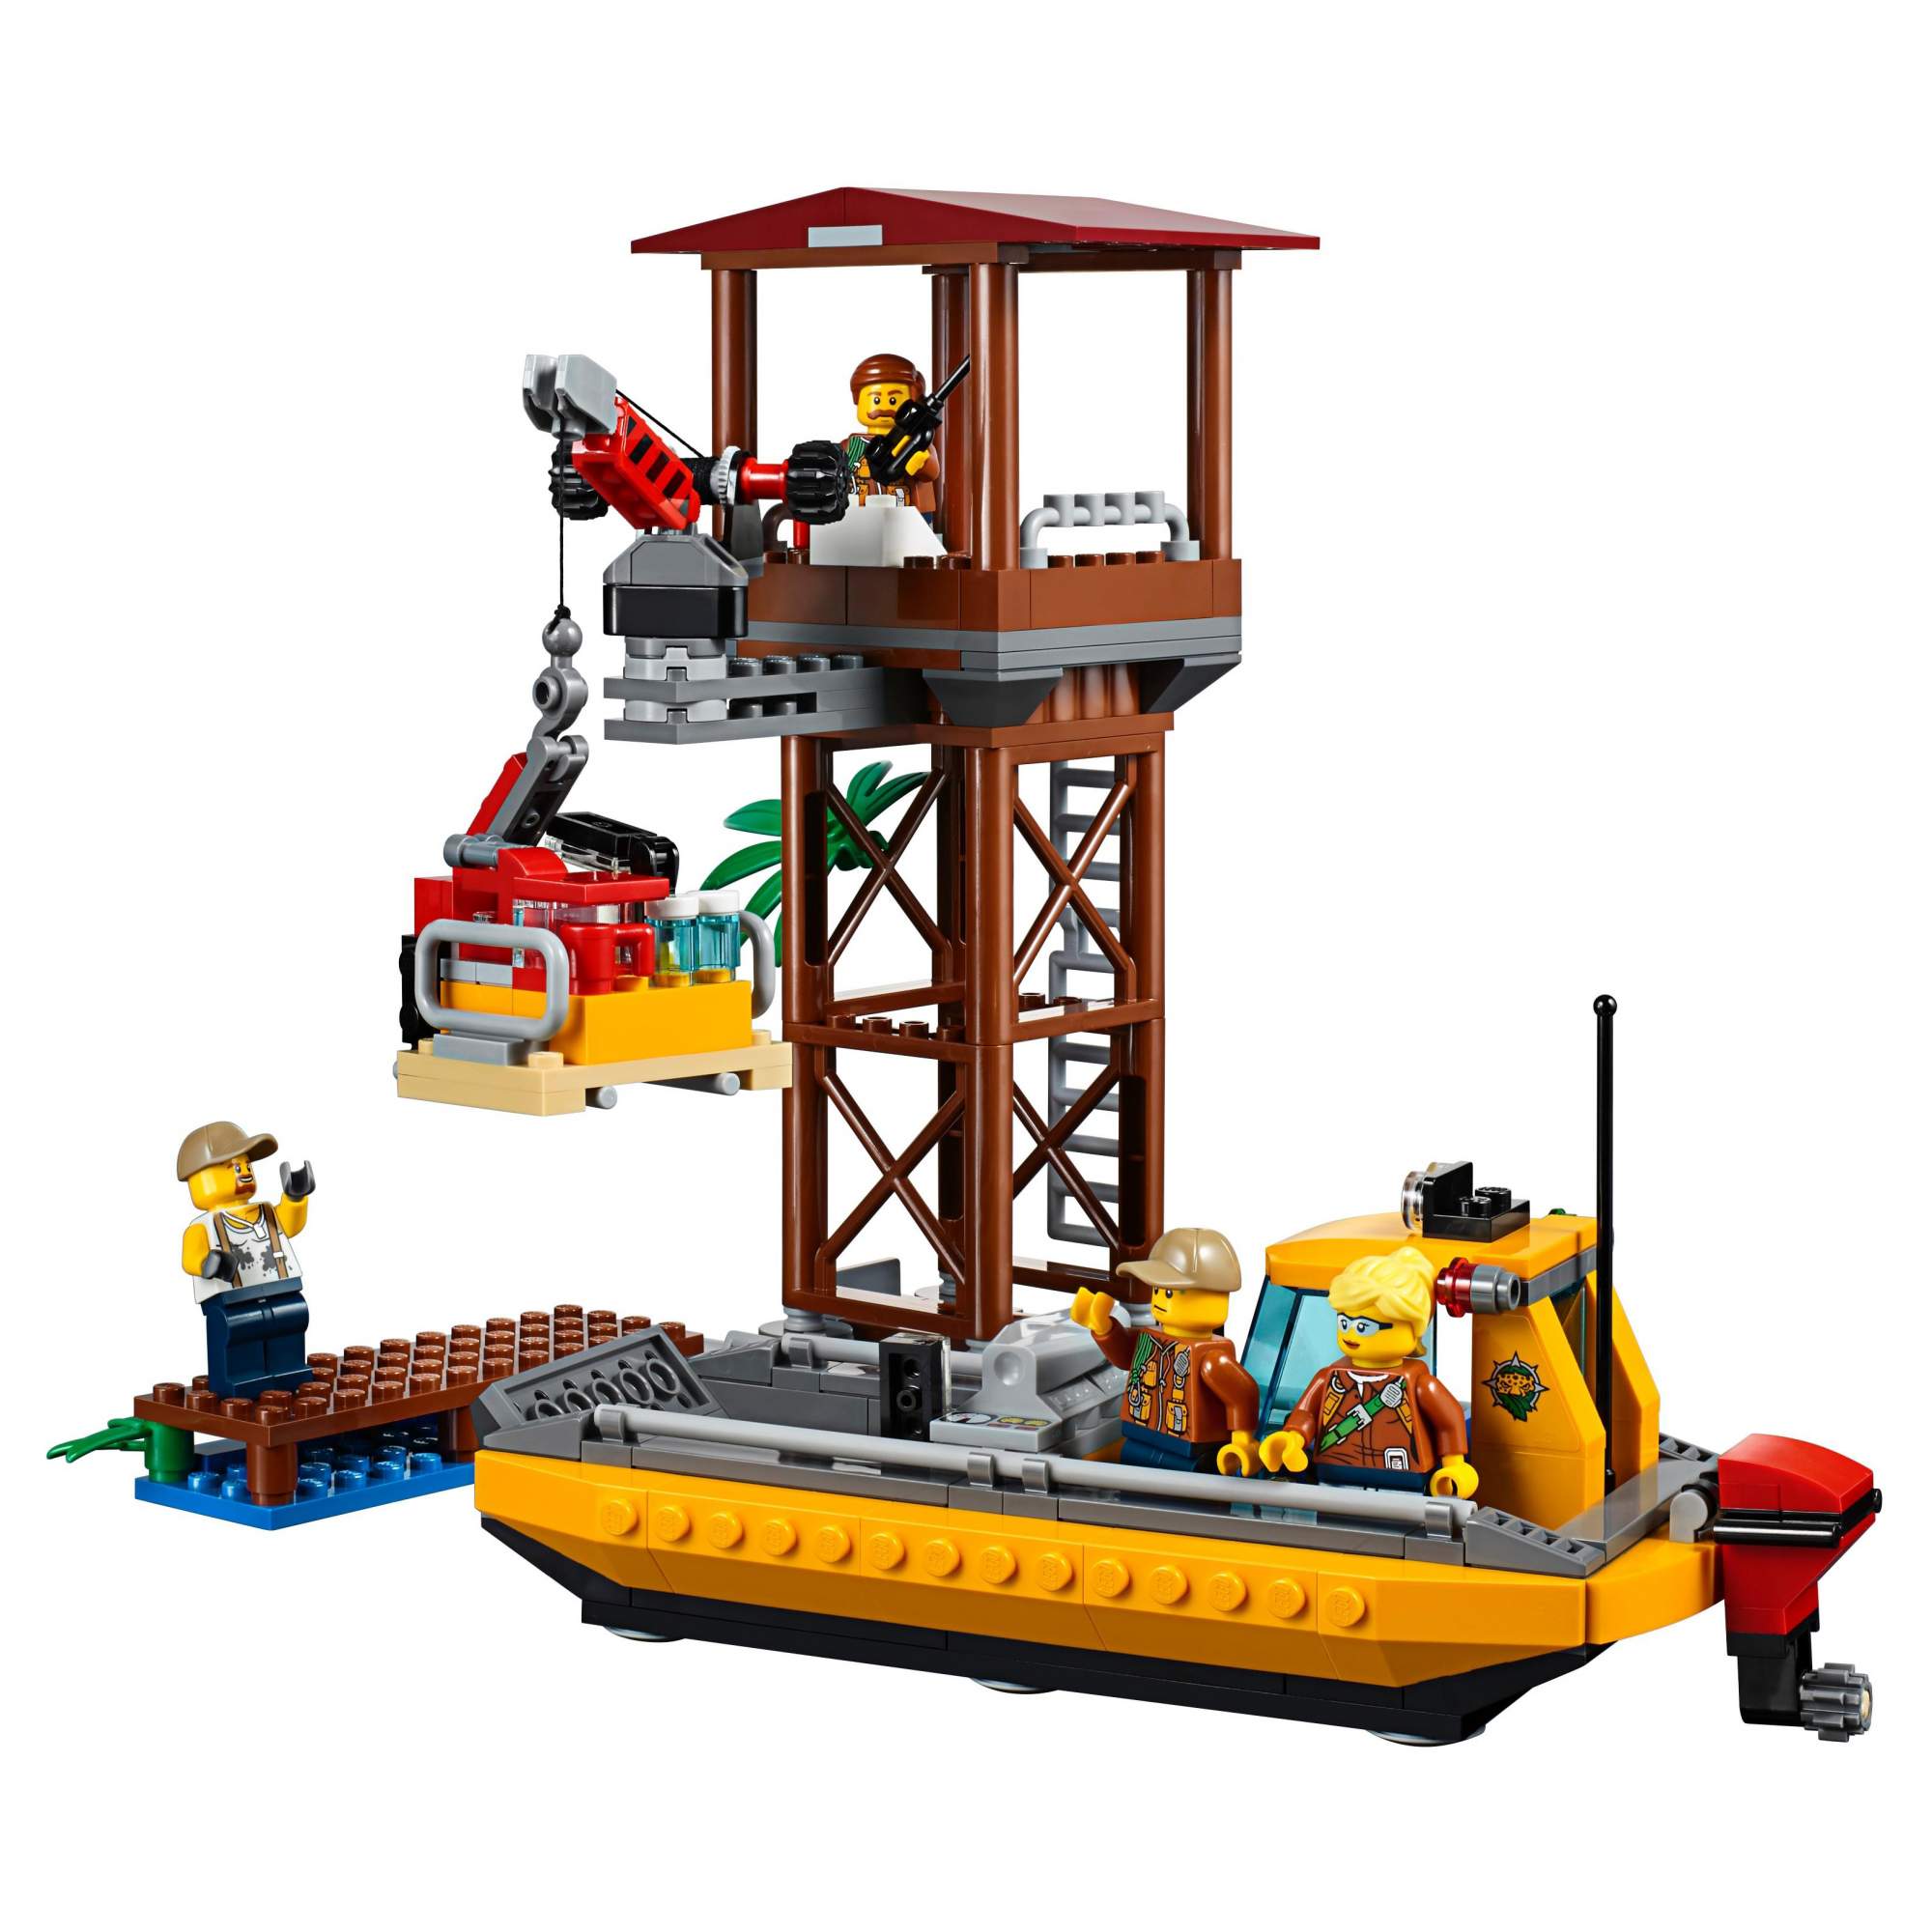 Конструктор LEGO City Jungle Explorers Вертолёт для доставки грузов в джунгли (60162)